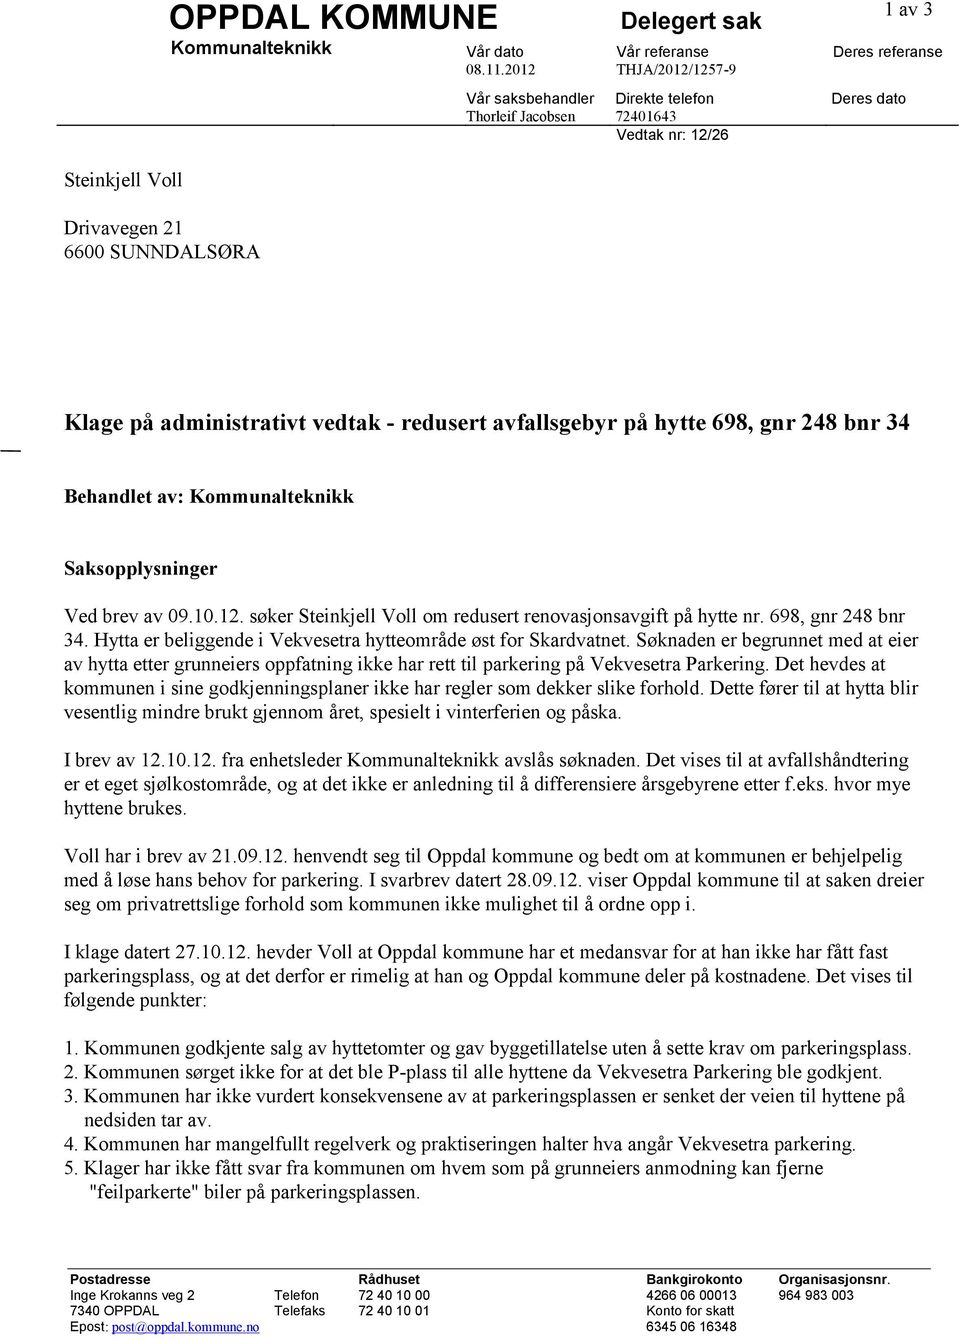 Behandlet av: Kommunalteknikk Saksopplysninger Ved brev av 09.10.12. søker Steinkjell Voll om redusert renovasjonsavgift på hytte nr. 698, gnr 248 bnr 34.